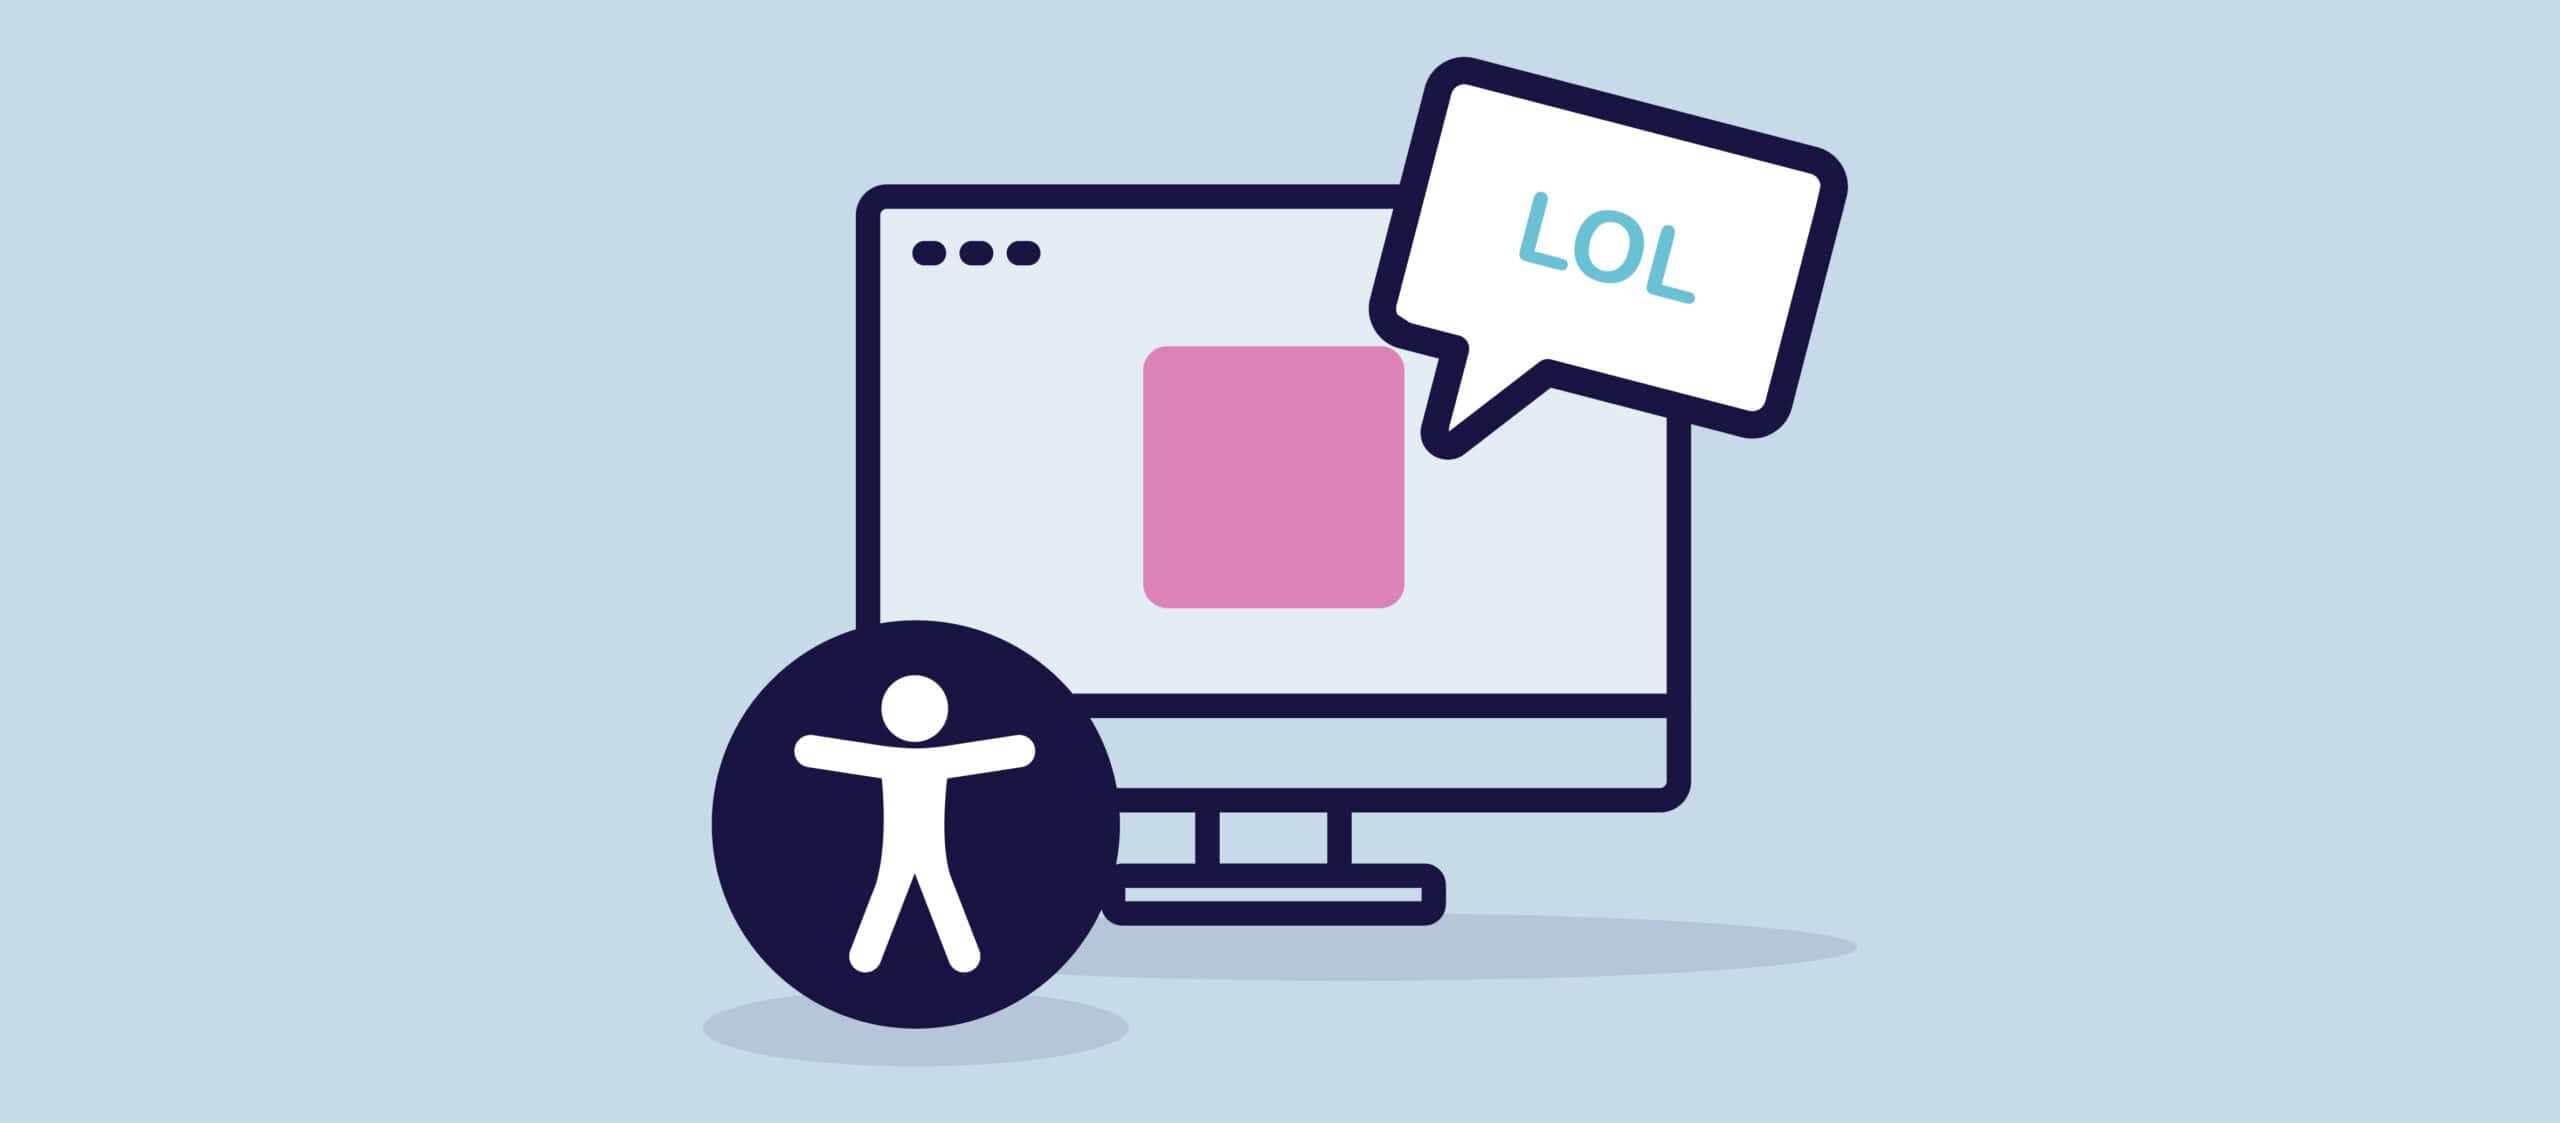 En illustration af en computerskærm med en lyserød firkant på skærmen, der repræsenterer et meme. Ud af memet kommer en taleboble med teksten "LOL". Til venstre for skærmen ses det universelle tilgængelighedssymbol.